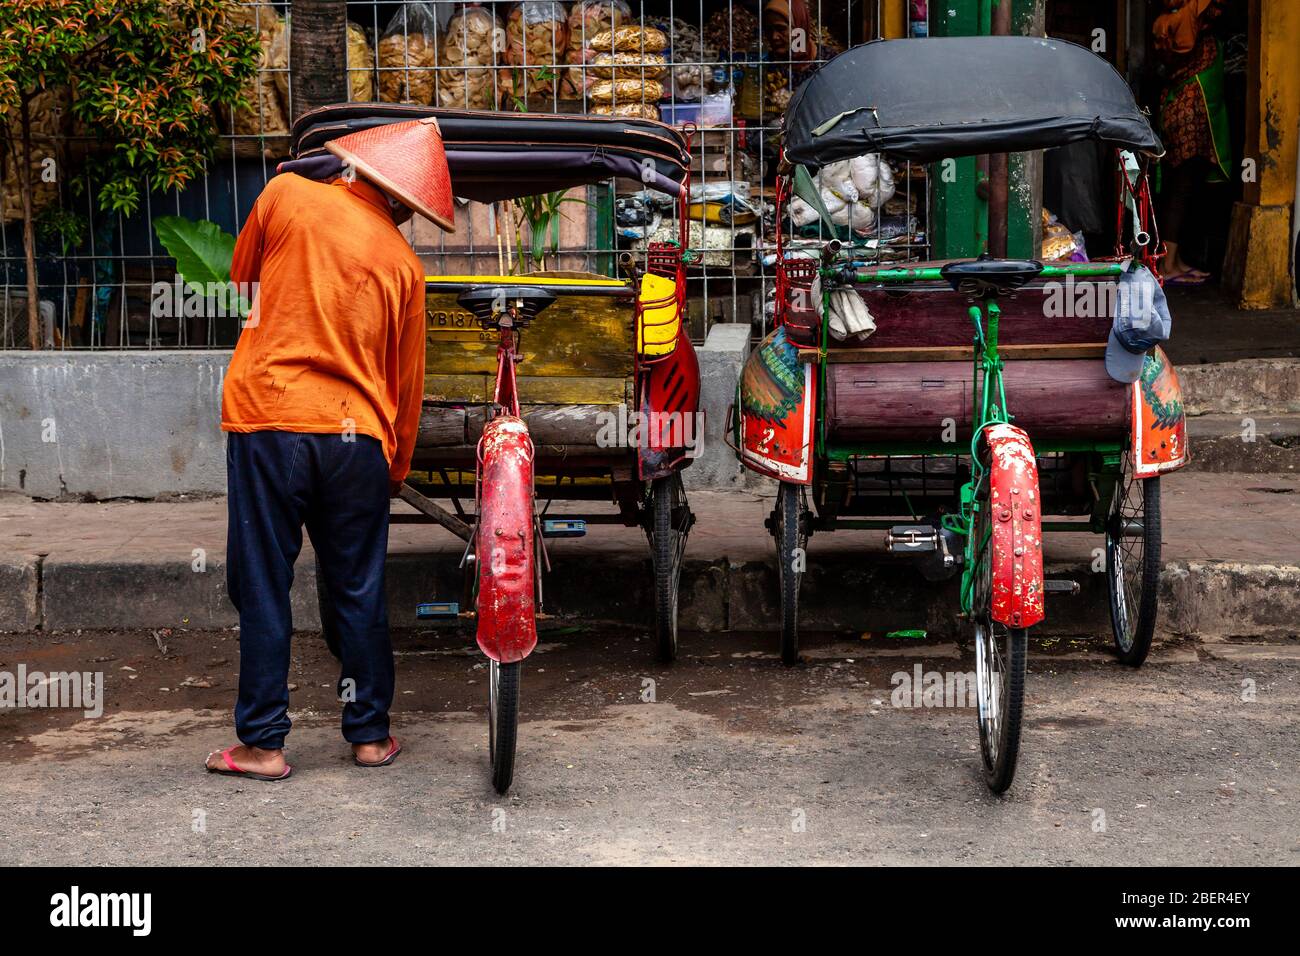 Traditionelle Bekaken (Radrickschas) und Fahrer, Yogyakarta, Indonesien. Stockfoto